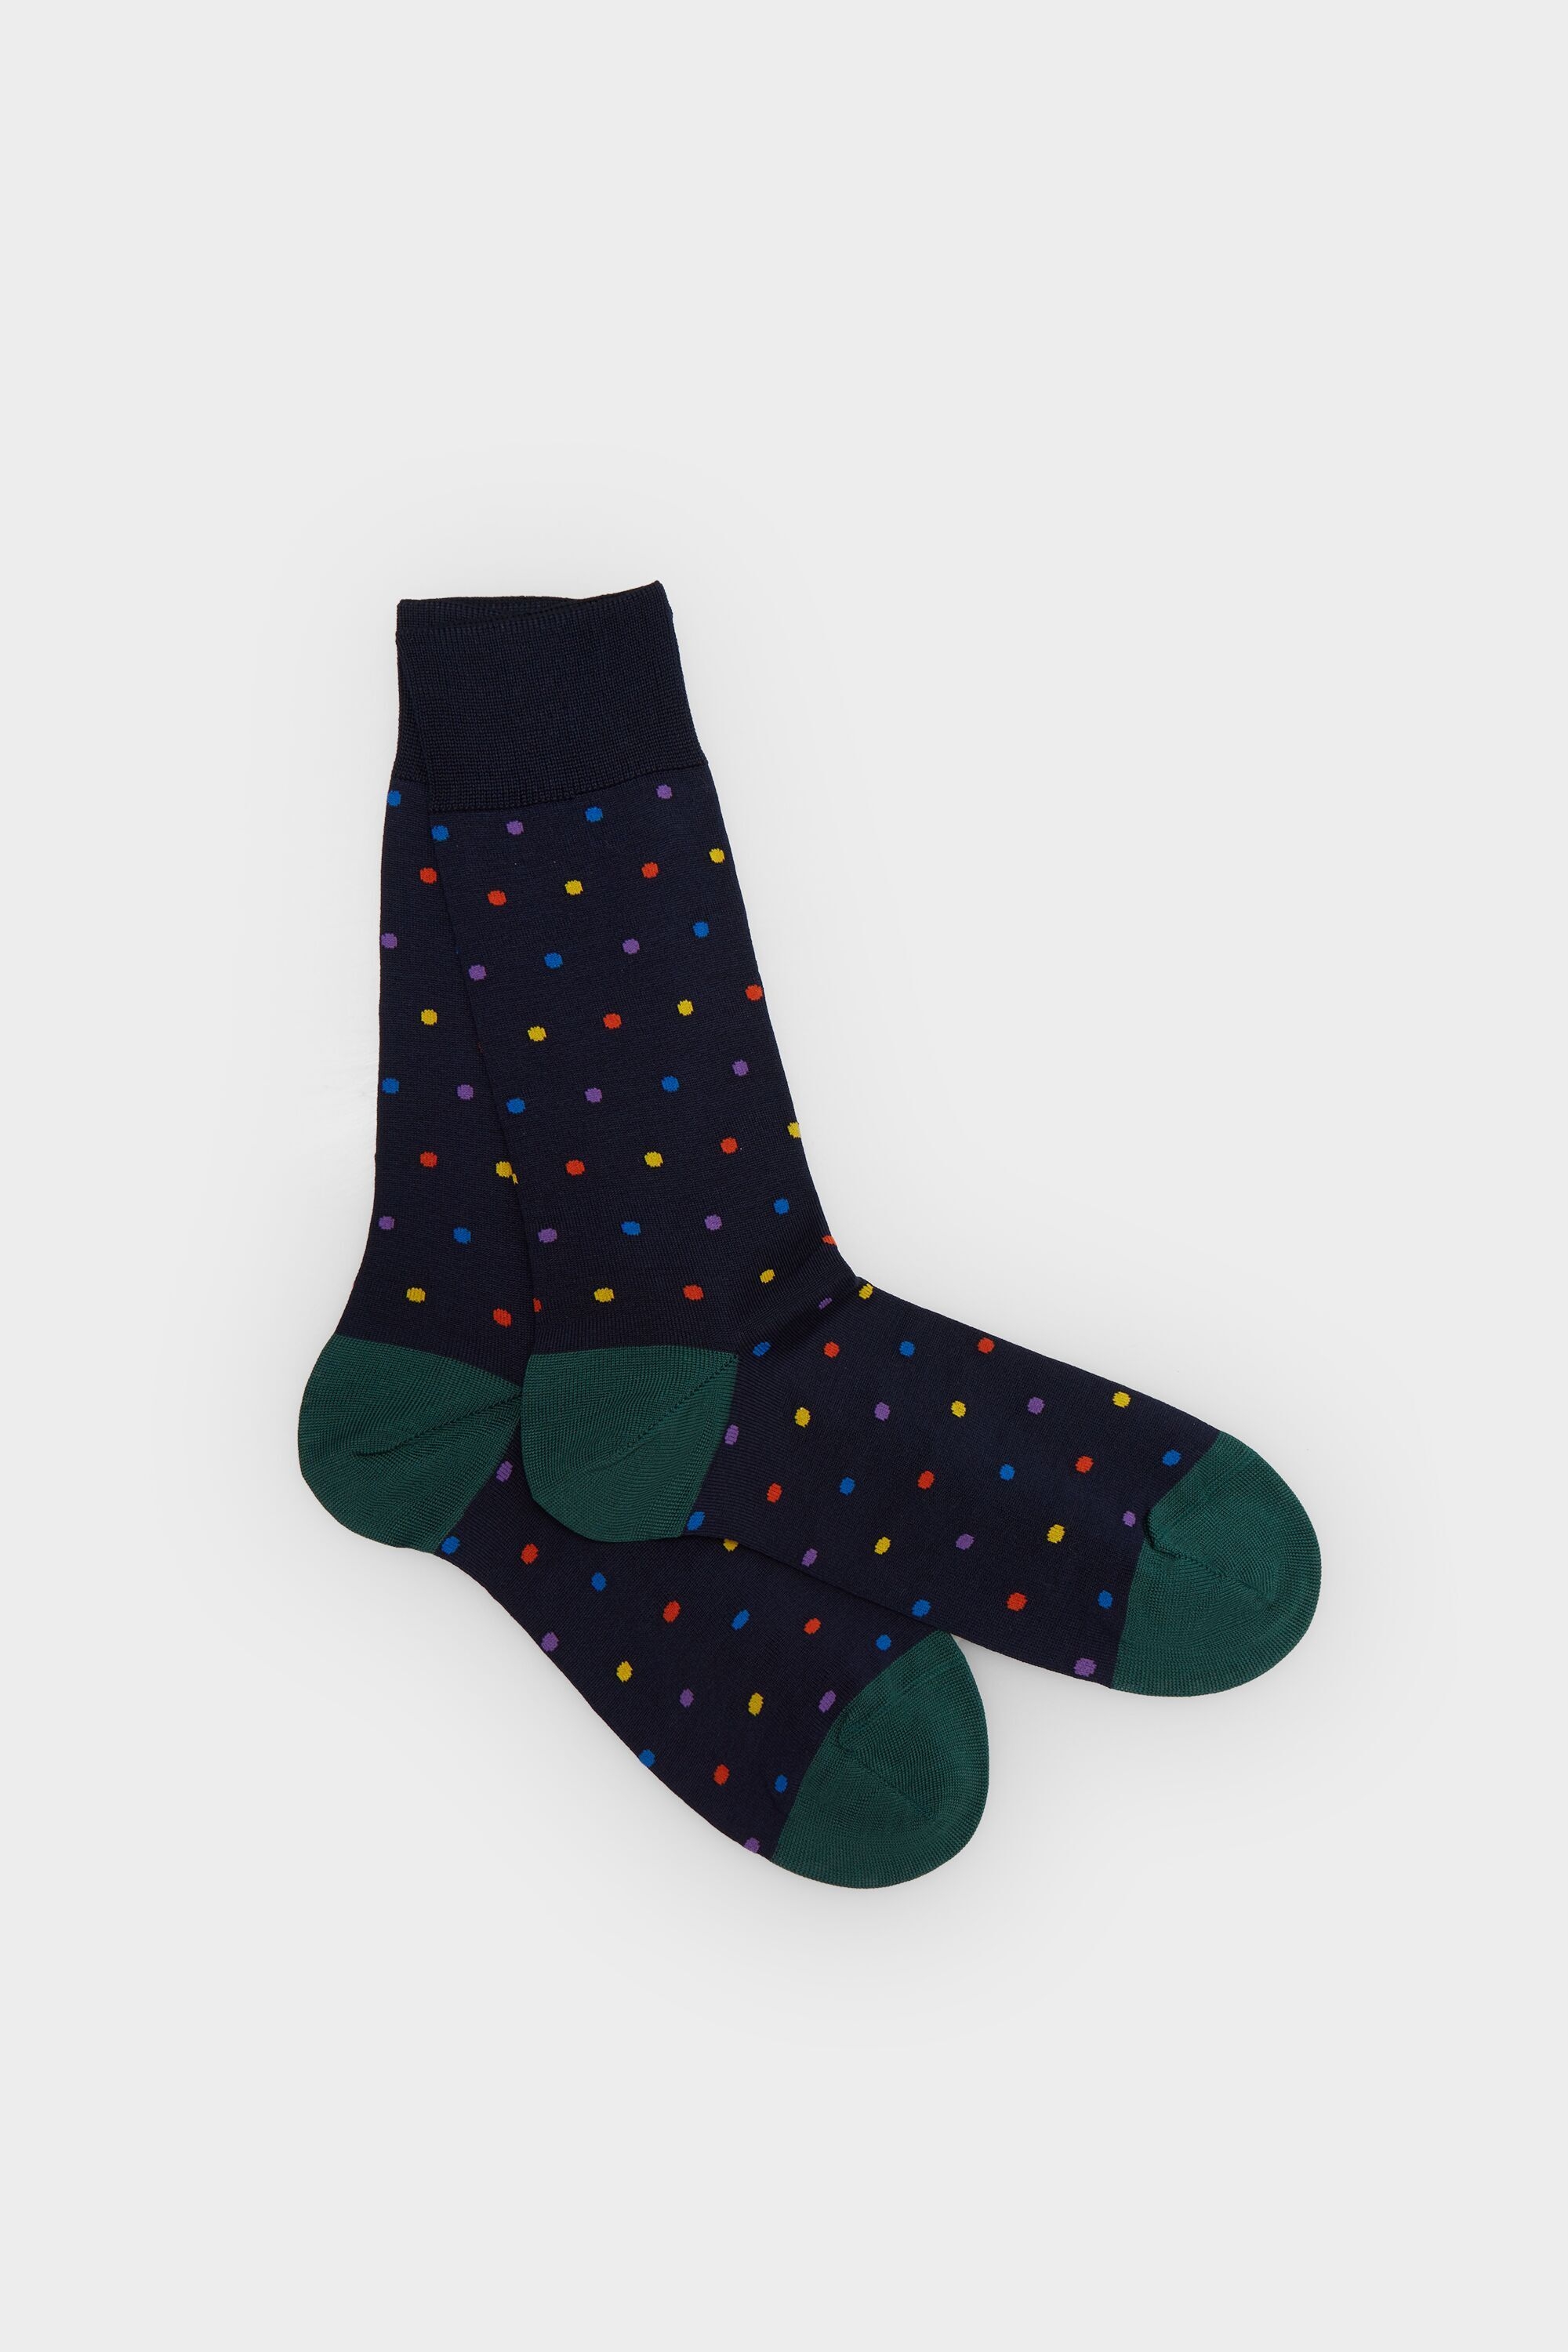 Polka dot socks